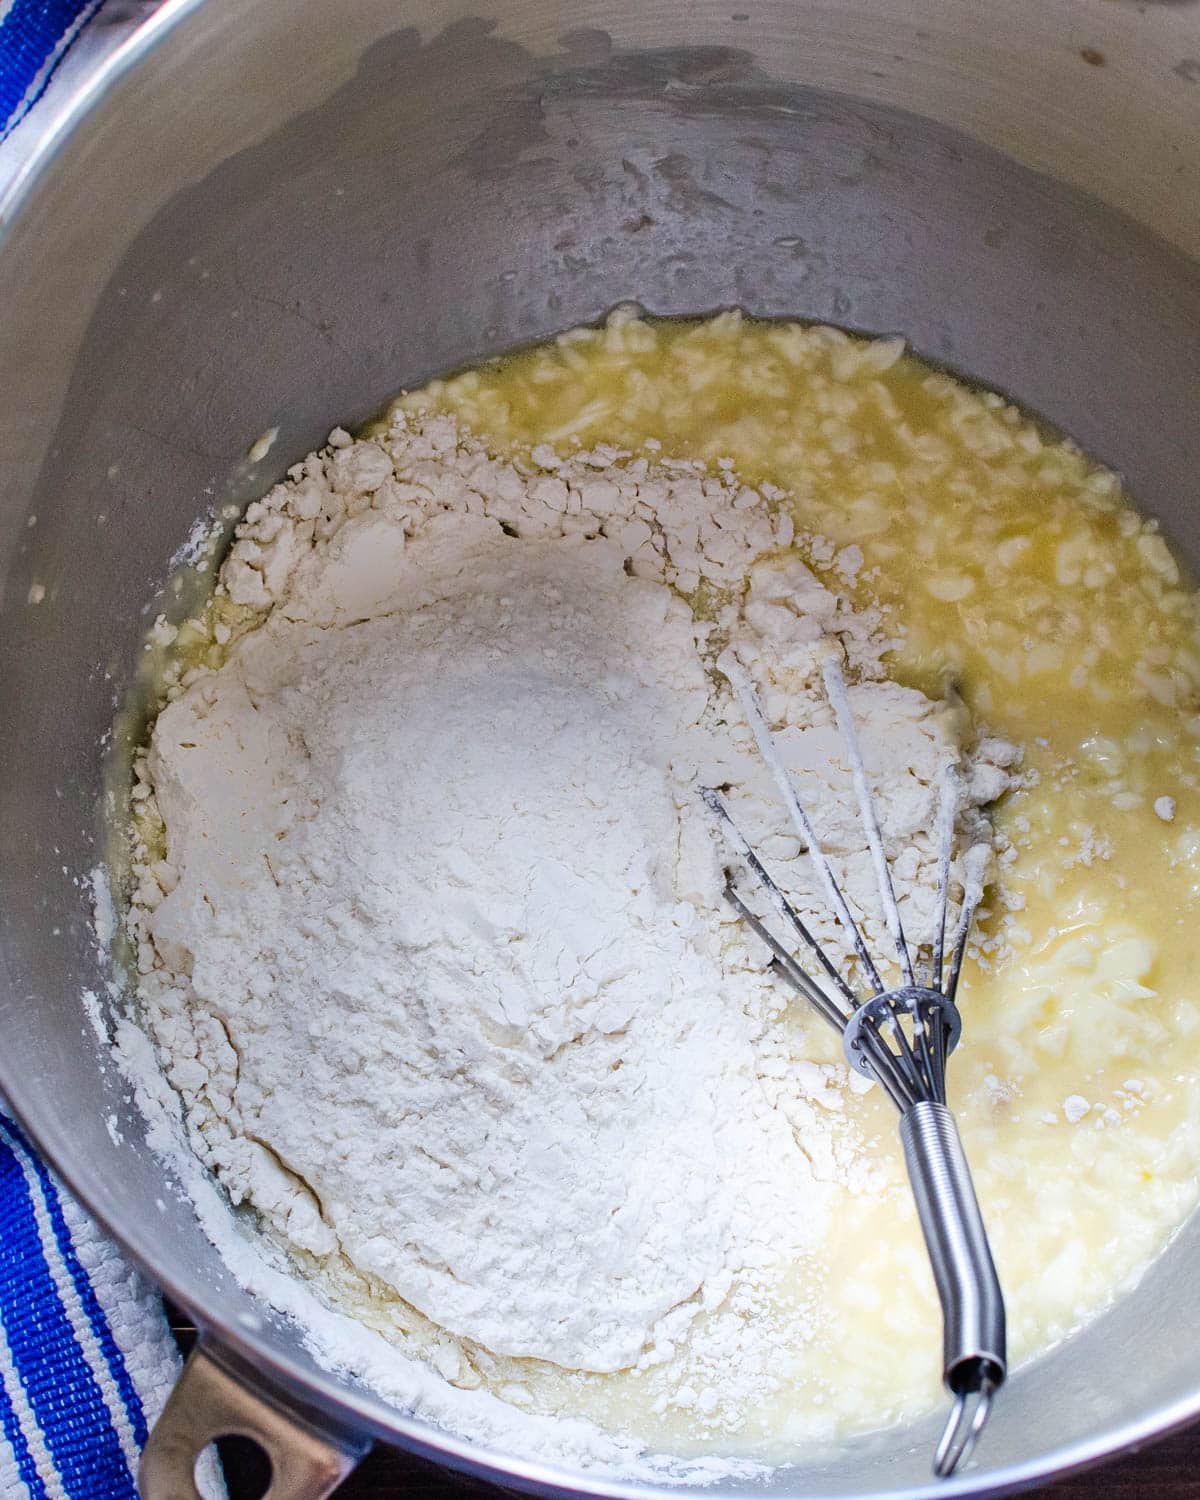 Adding flour to the sponge.